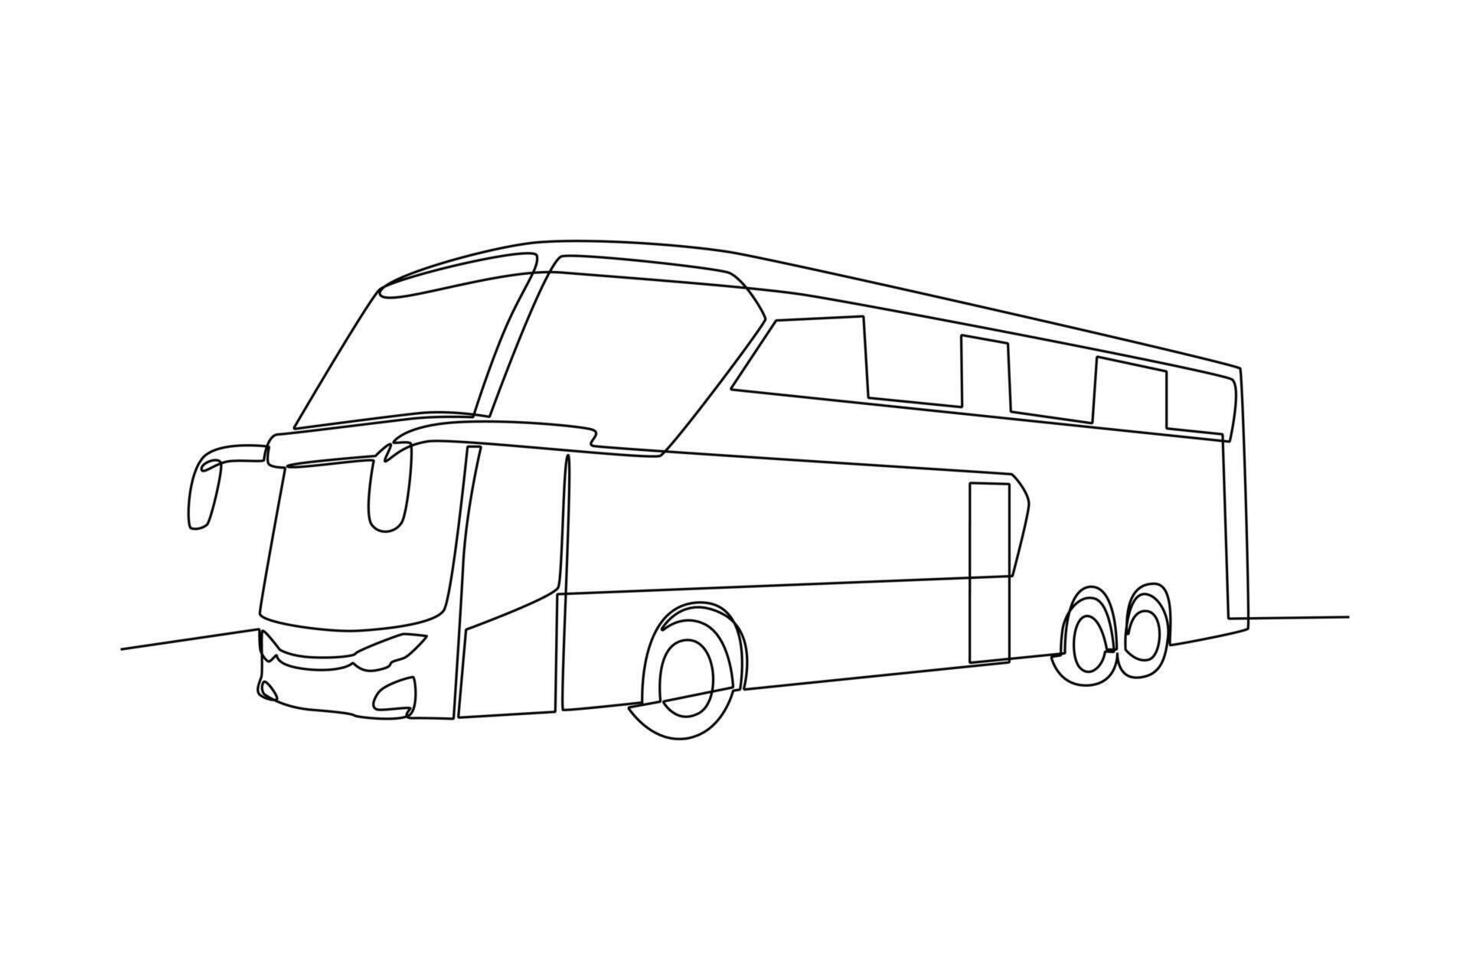 continuo uno linea disegno moderno autobus. terra mezzi di trasporto concetto. scarabocchio vettore illustrazione.